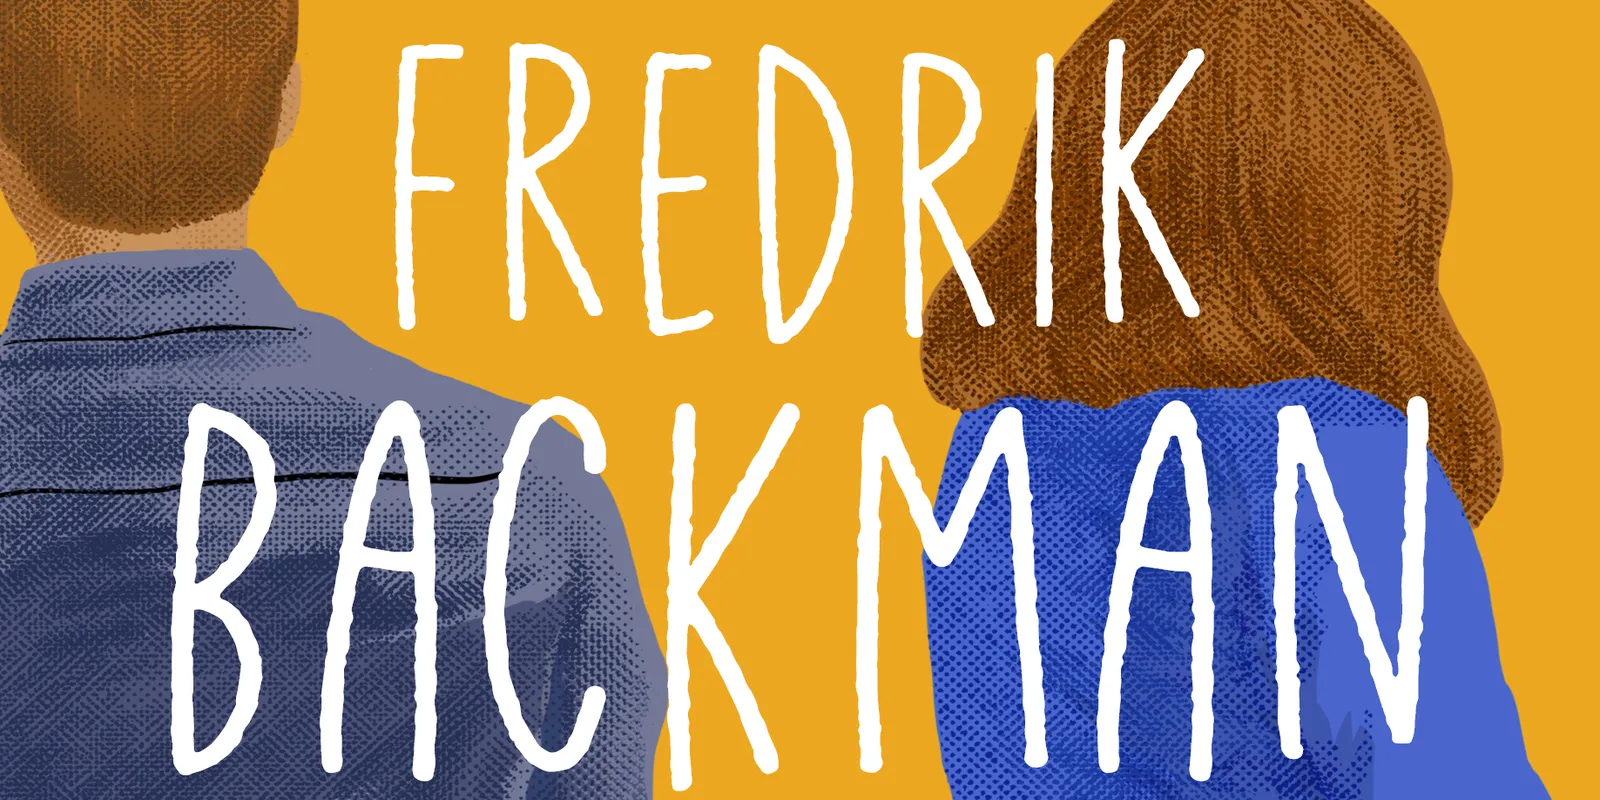 Fredrik Backman in Anxious People